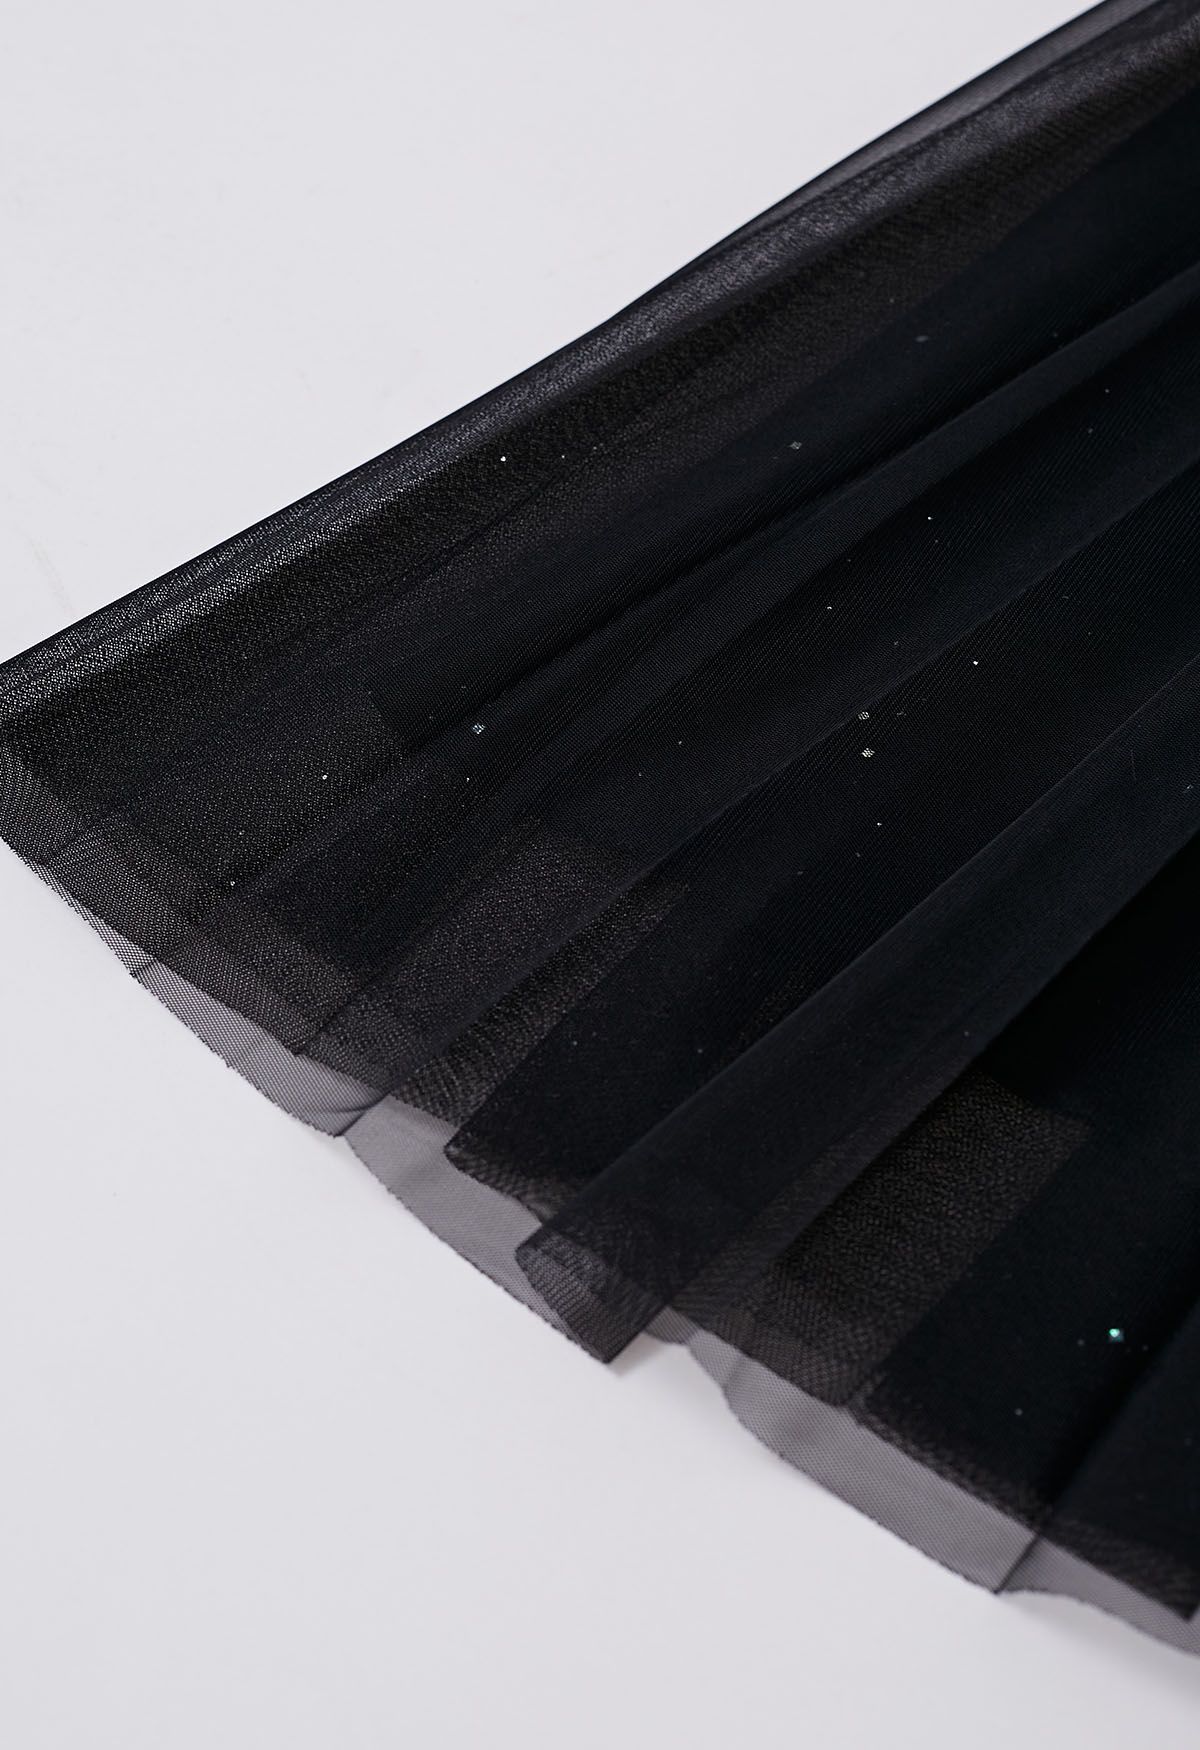 Falda de tul de malla plisada con ribete de purpurina en negro